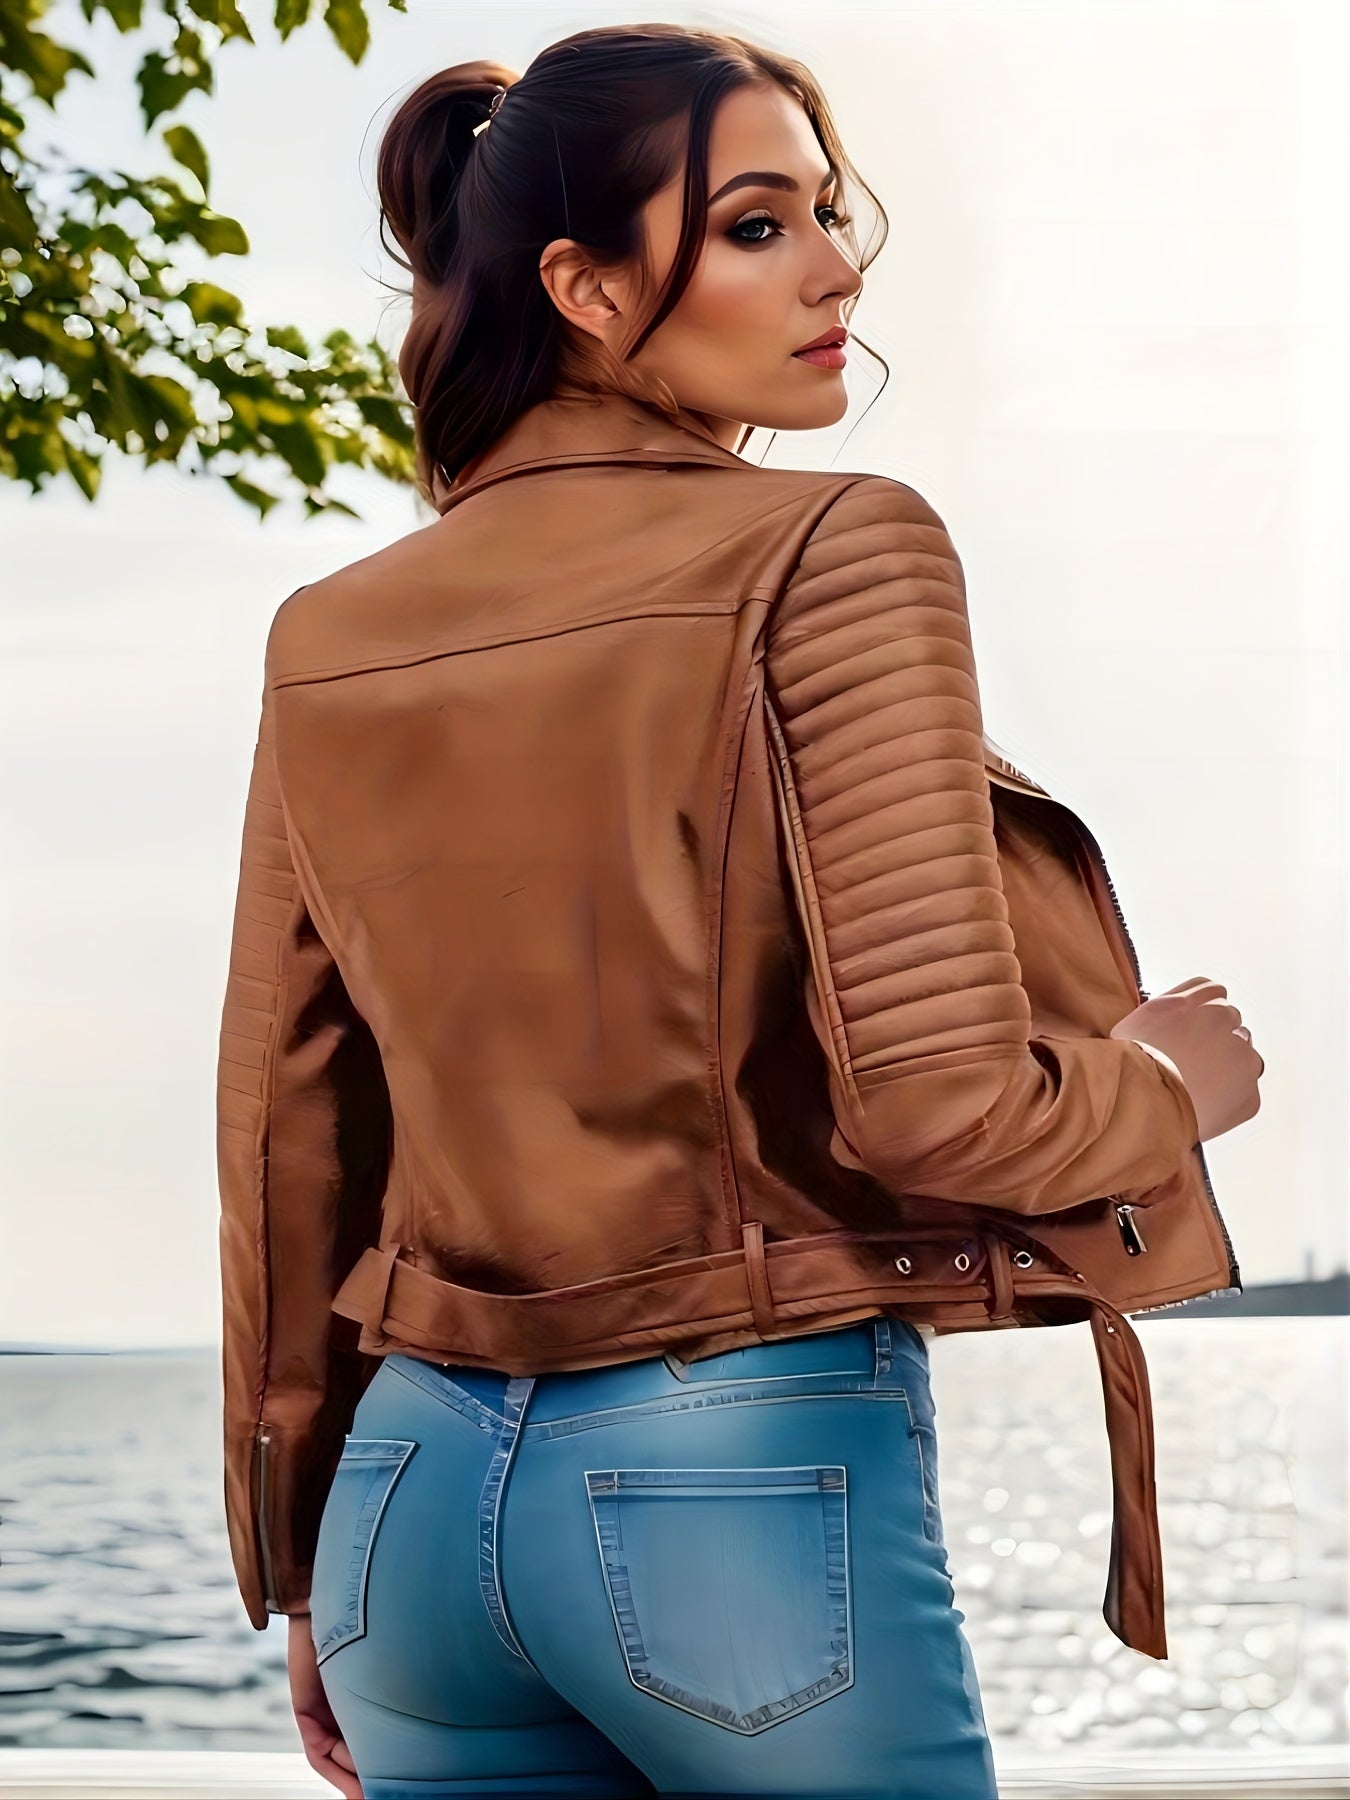 Antmvs Solid Leather Biker Jacket, Streetwear Long Sleeve Zipper Outerwear, Women's Clothing